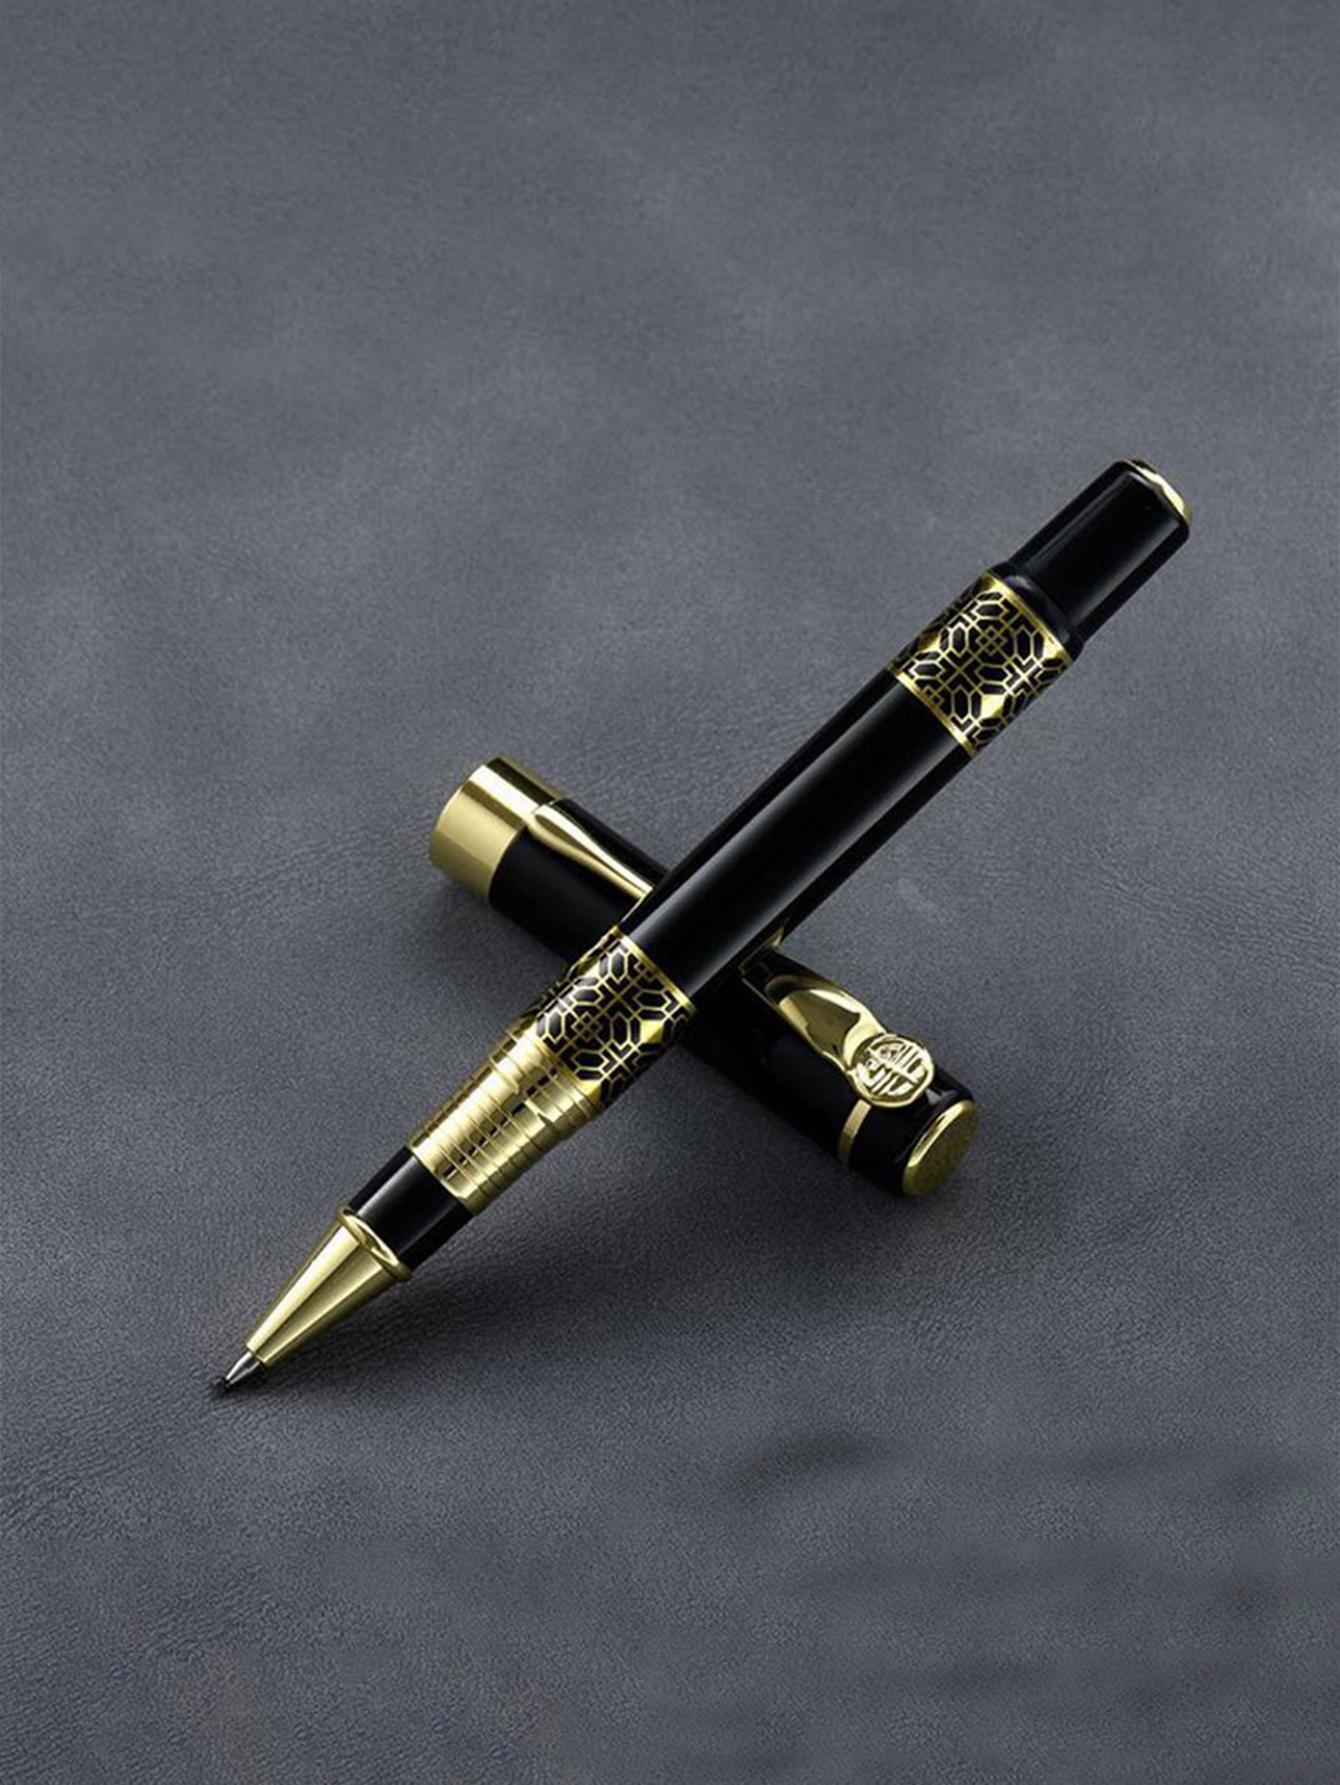 Μοντέρνο στυλό μαύρο χρυσό με θήκη